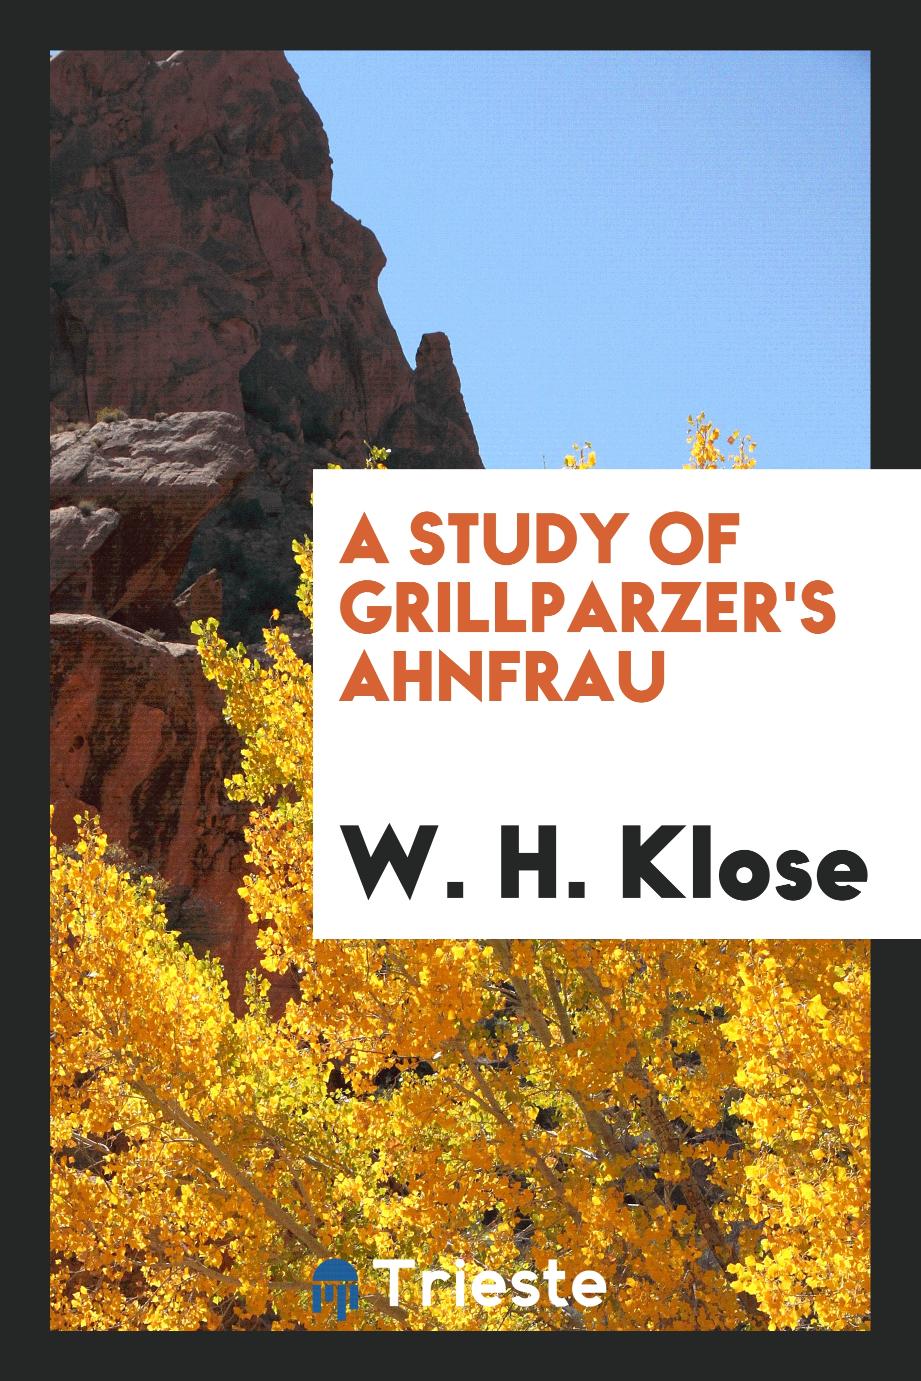 A Study of Grillparzer's Ahnfrau